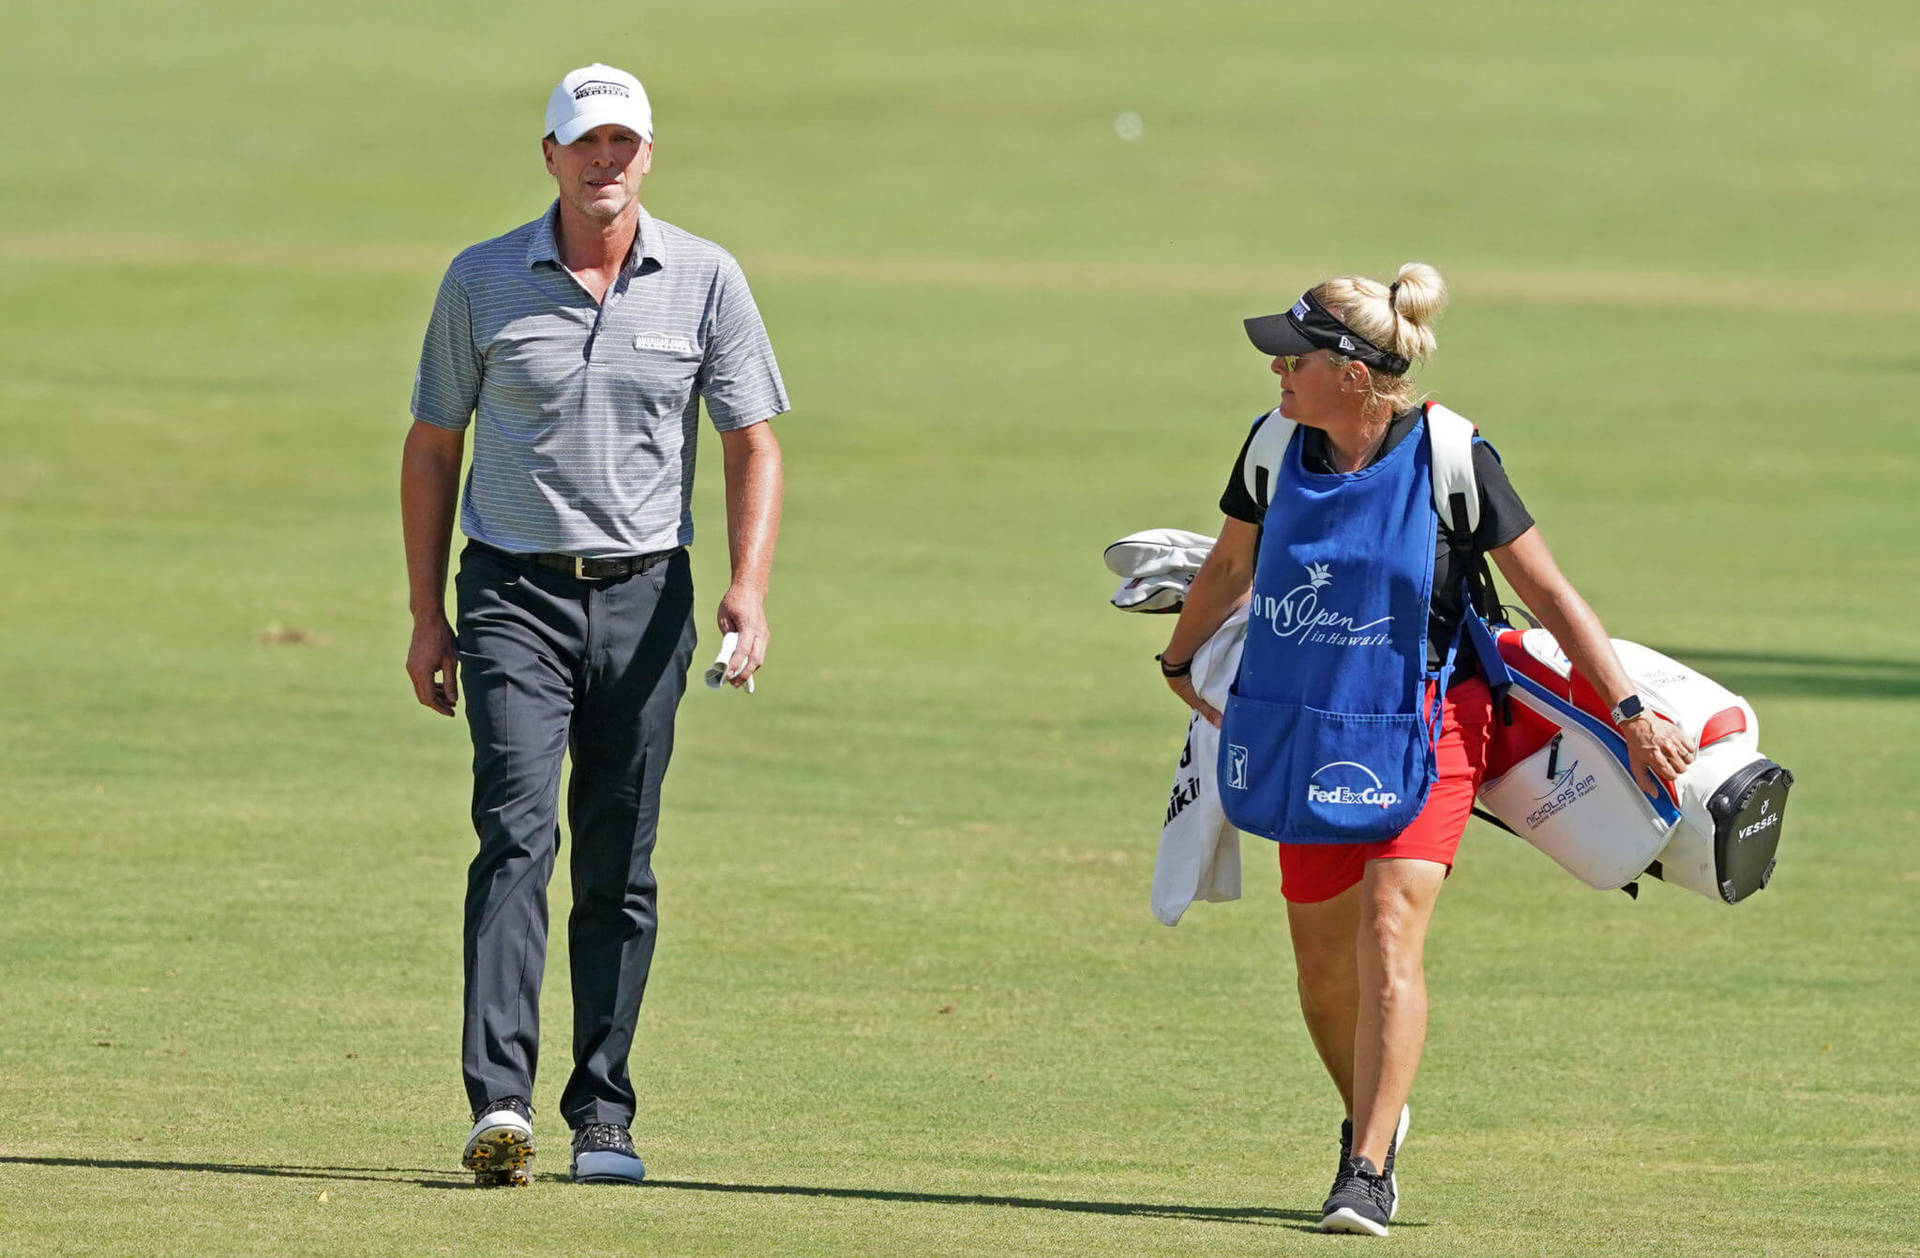 Steve Stricker med kone på golfbanen Wallpaper